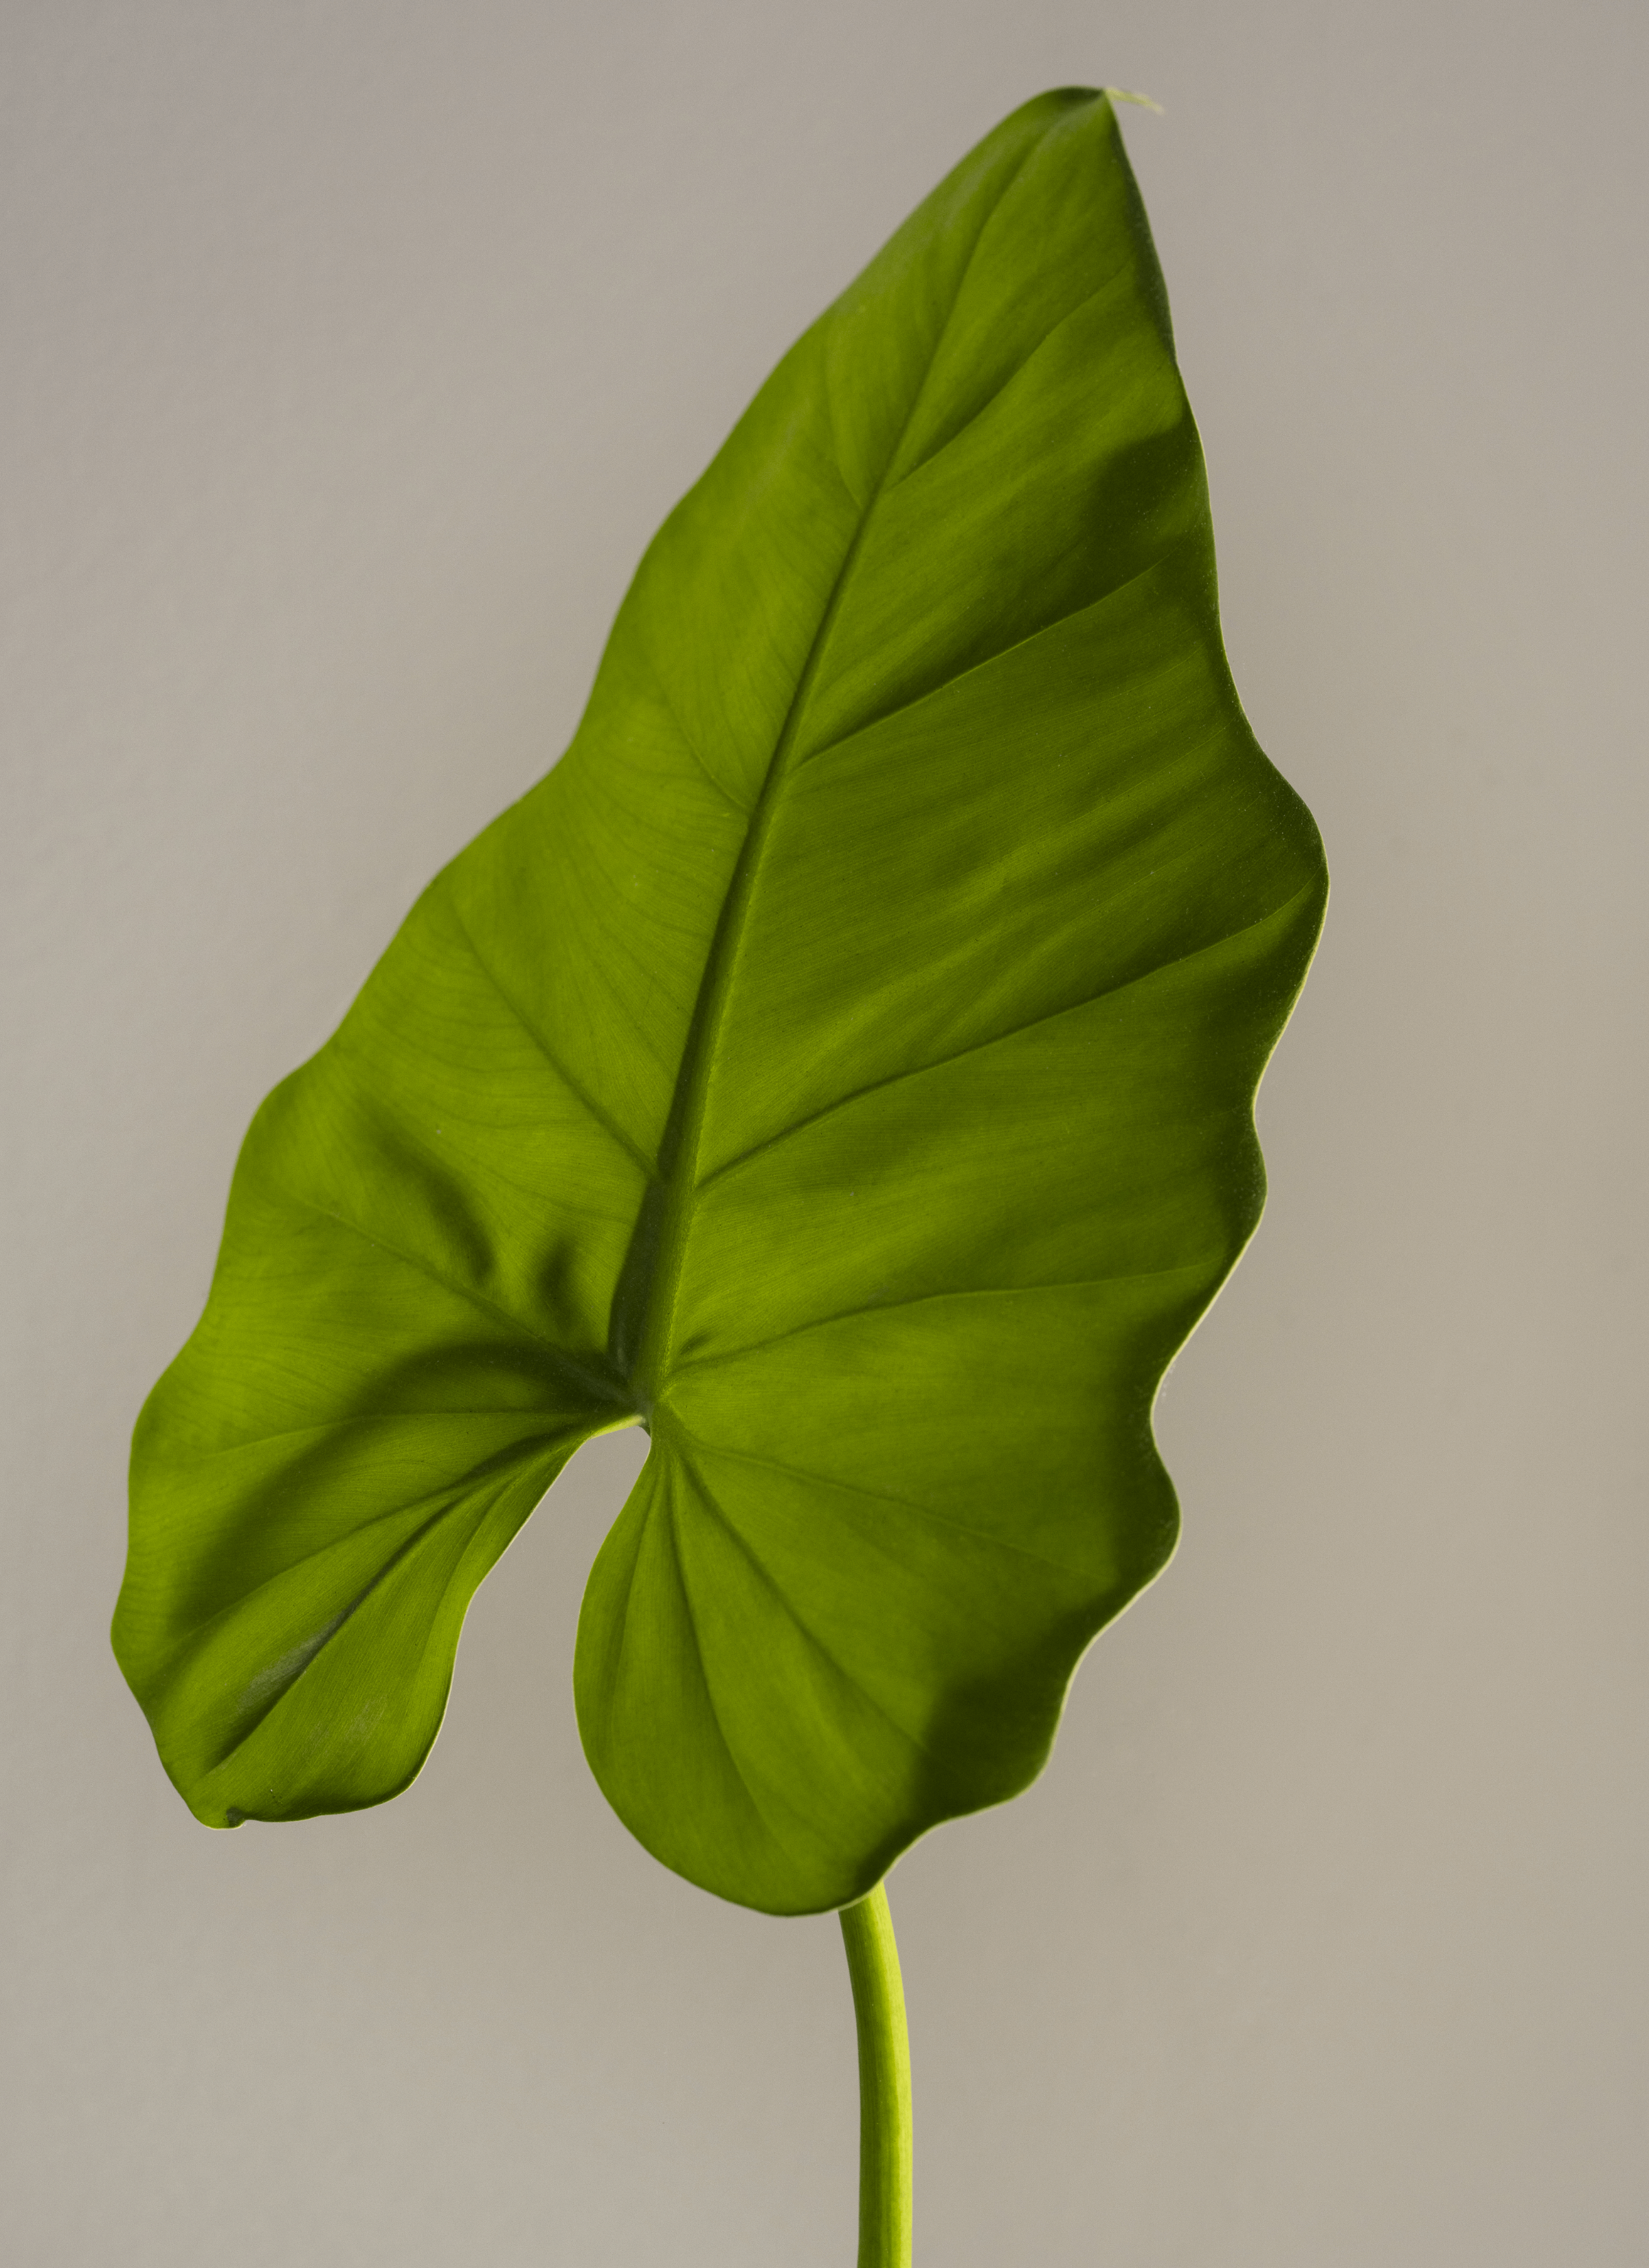 Still life, one green leaf.